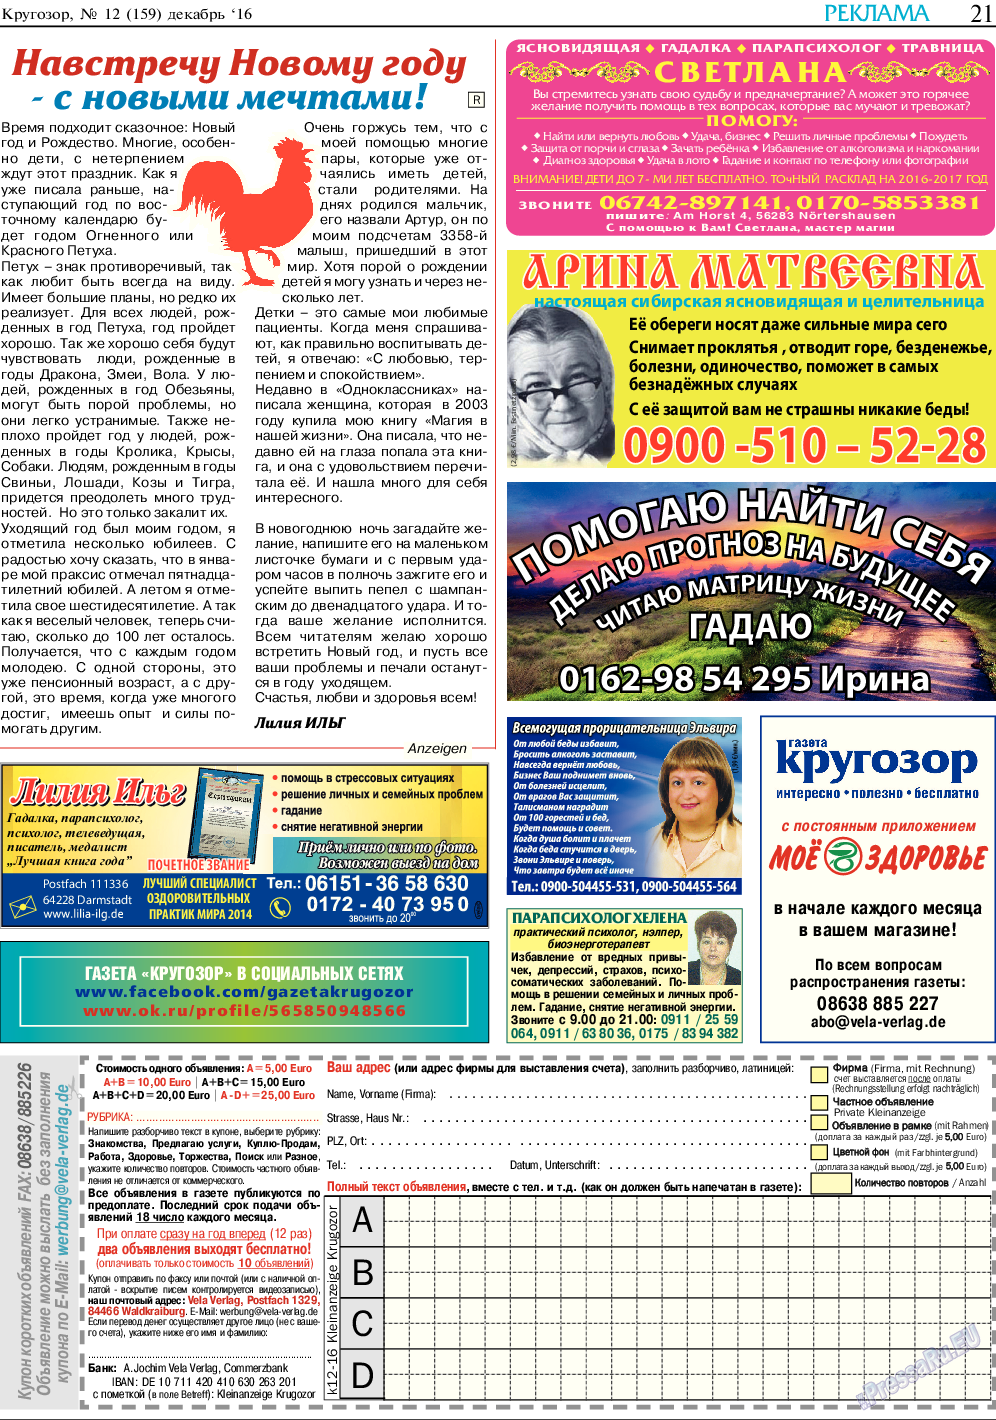 Кругозор, газета. 2016 №12 стр.21